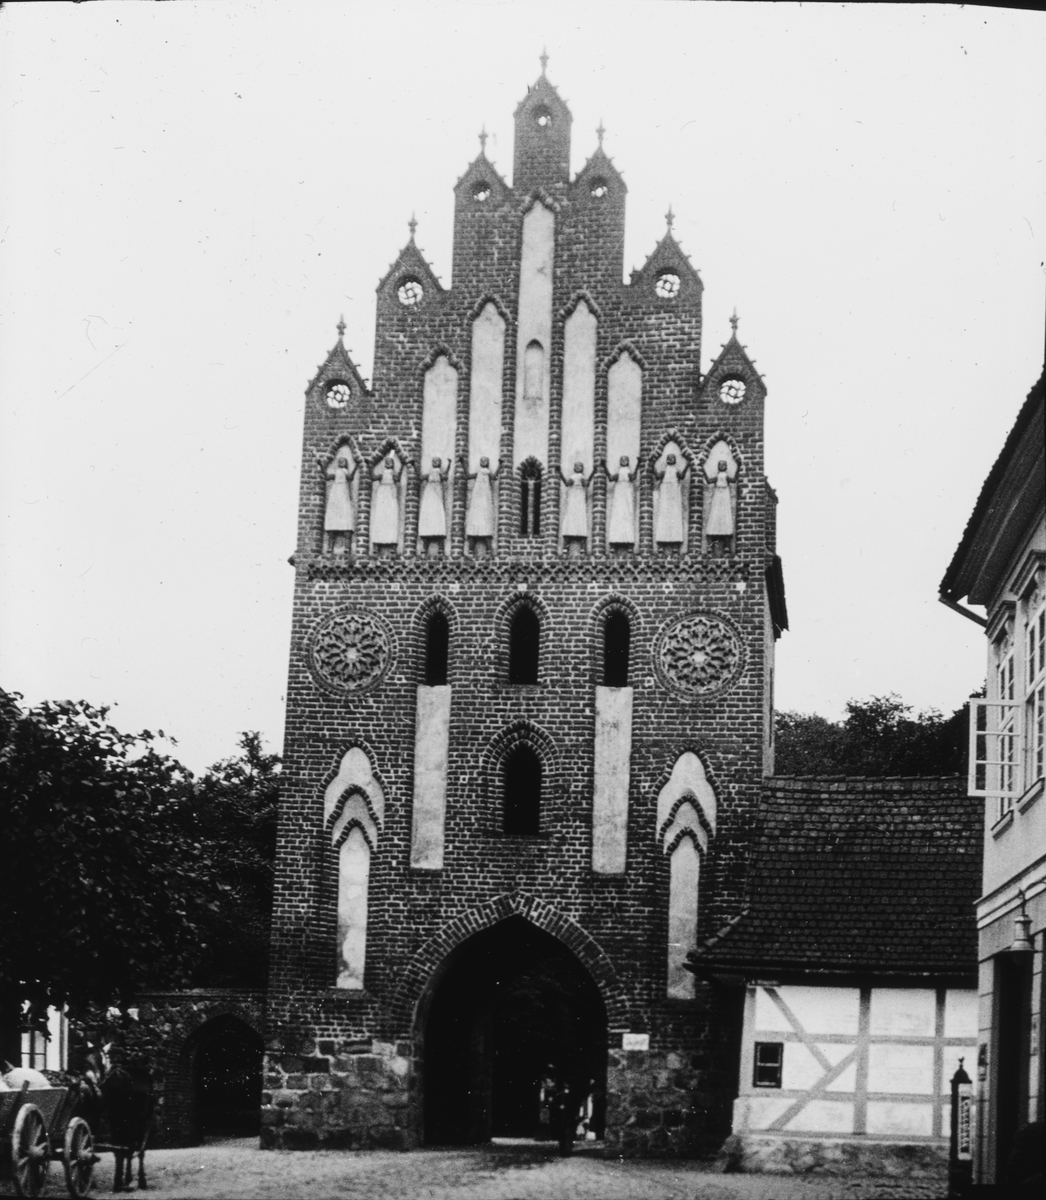 Skioptikonbild med motiv av Neue Tor, port i stadsmuren, Neubrandenburg.
Bilden har förvarats i kartong märkt: Resan 1912. Neubrandenburg 7. Text på bild: "None Tor".